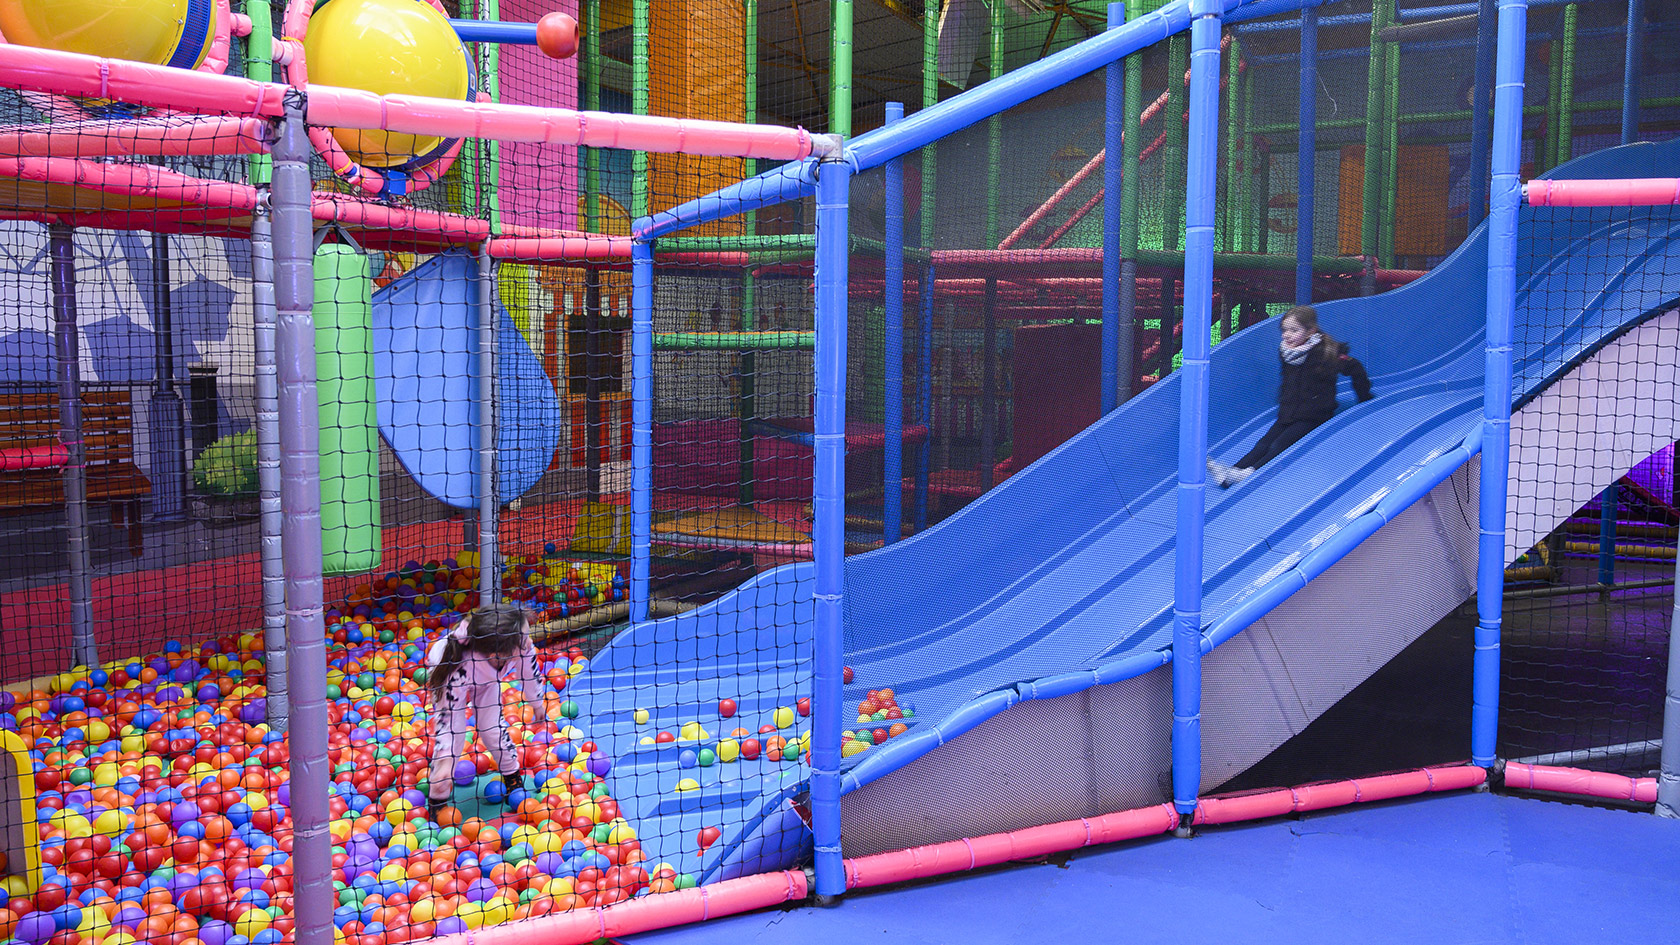 Aire de jeux et structures indoor pour enfants à Aix-en-Provence